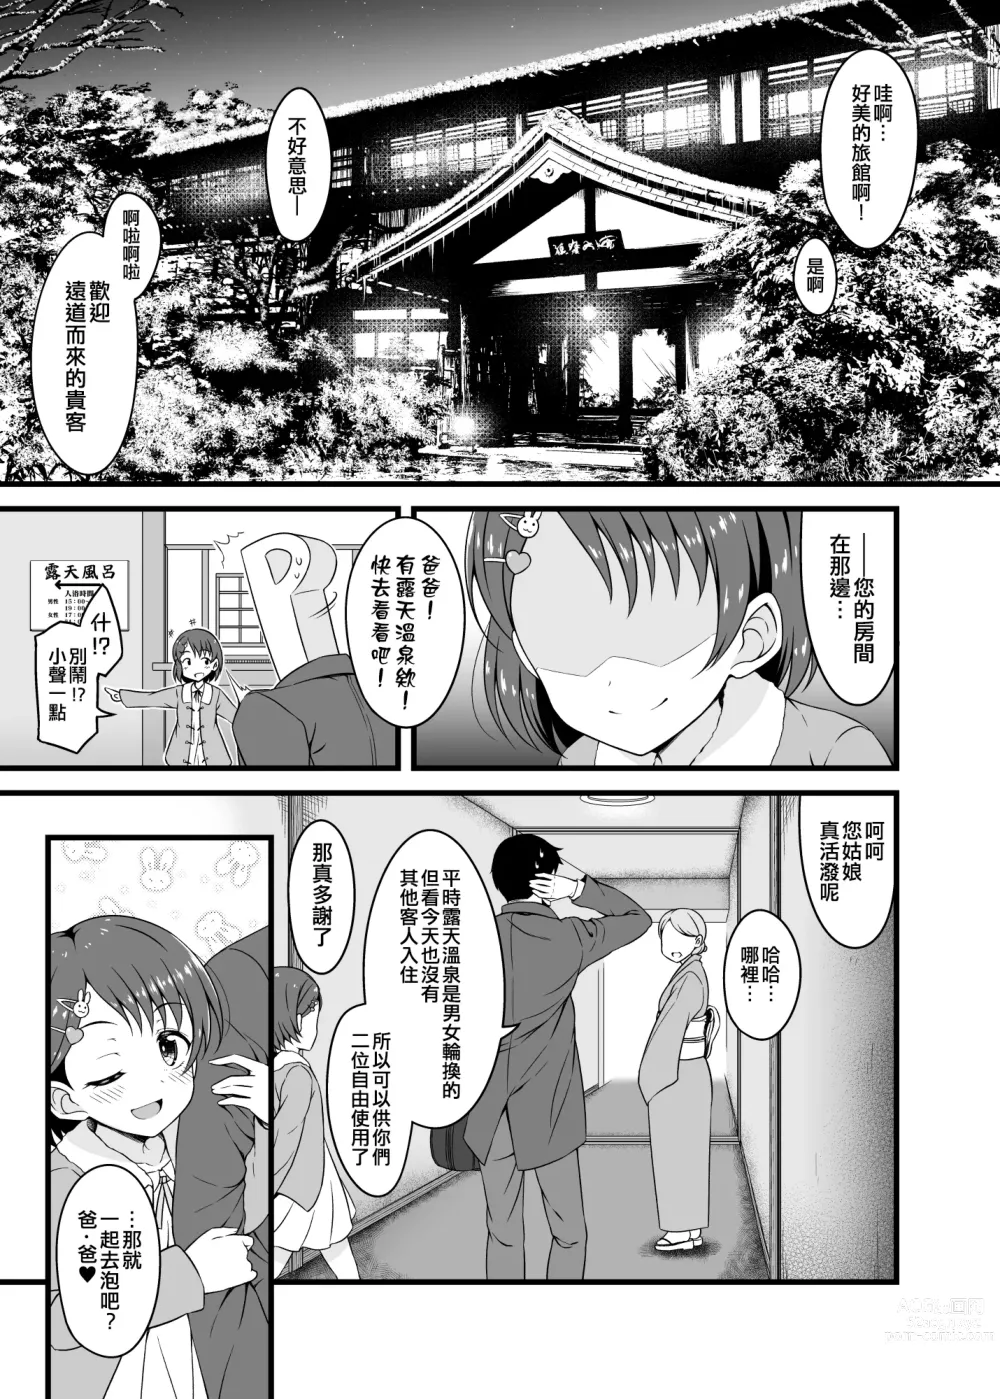 Page 6 of doujinshi Chie to Otona no Onsen Ryokou